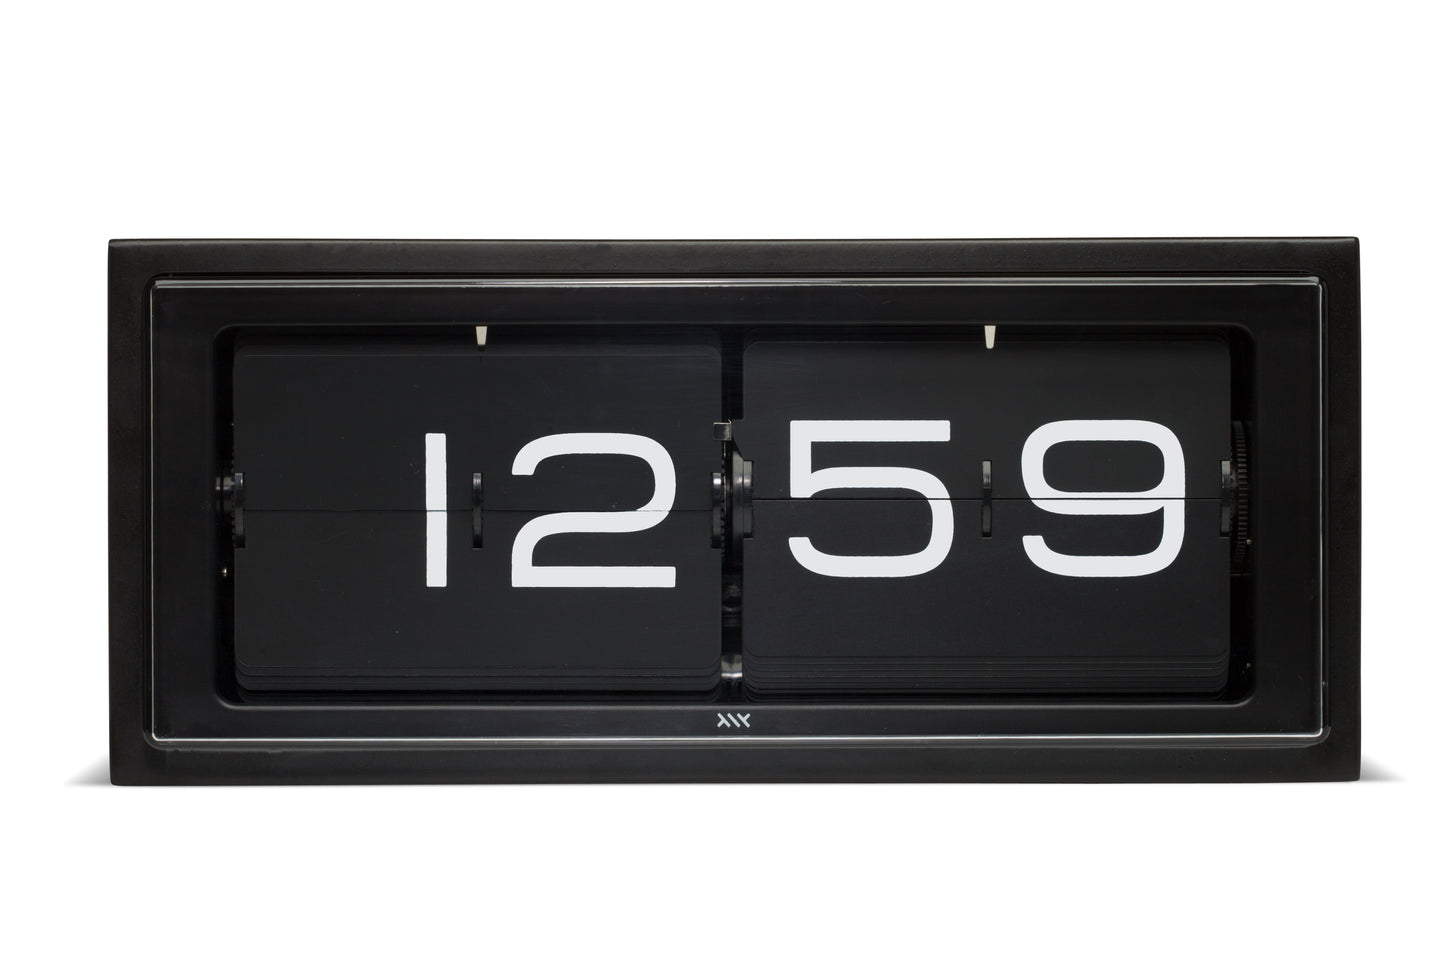 LEFF Amsterdam Retro Flip Display Brick Clock Black IP Stainless Steel Black Display with White Numbers